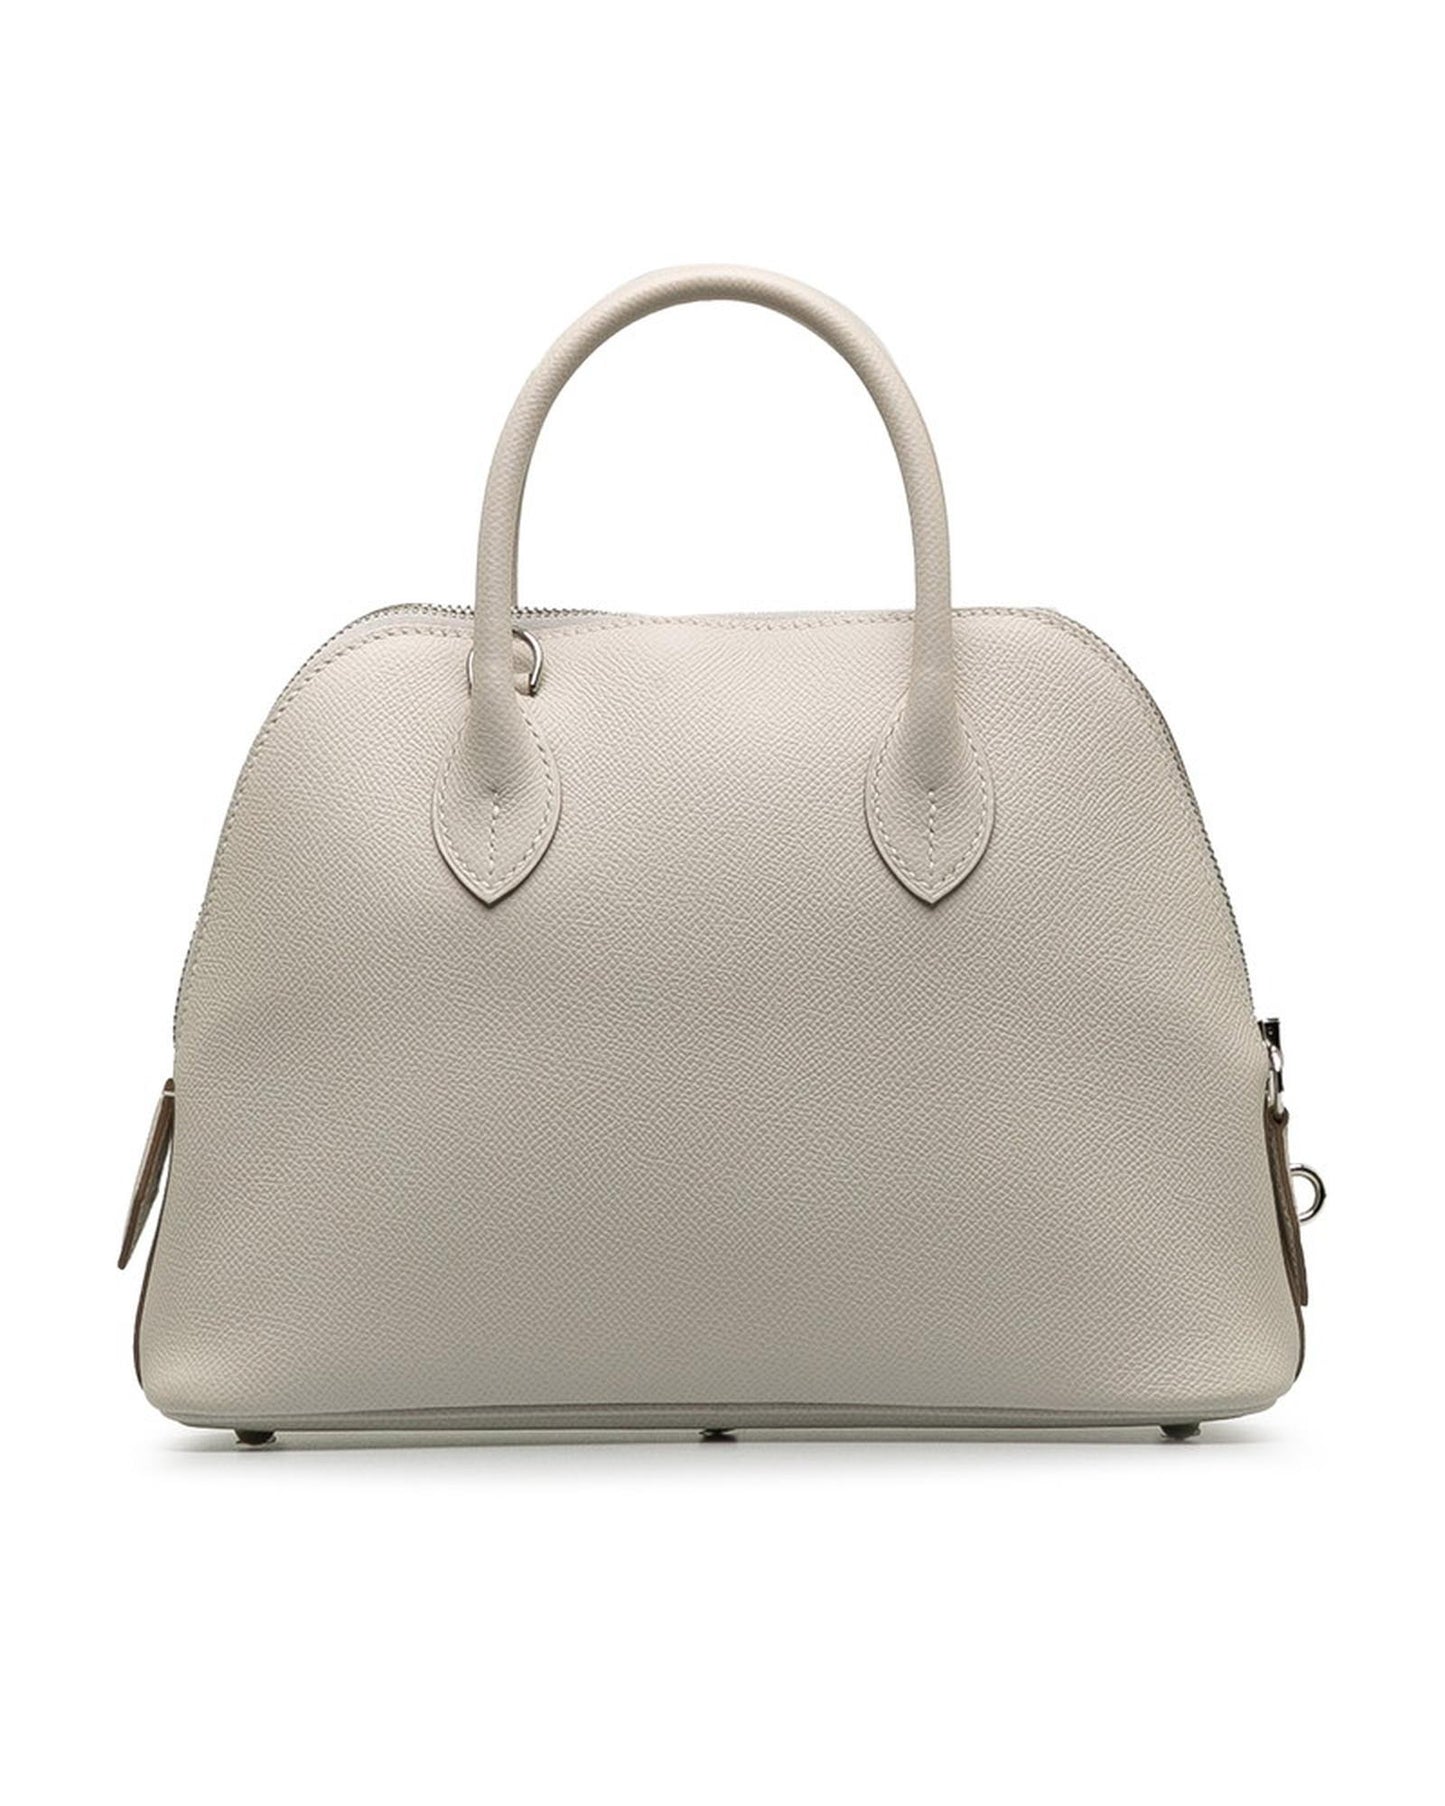 Hermes Women's Vintage White Leather Bolide Handbag by Hermes in White